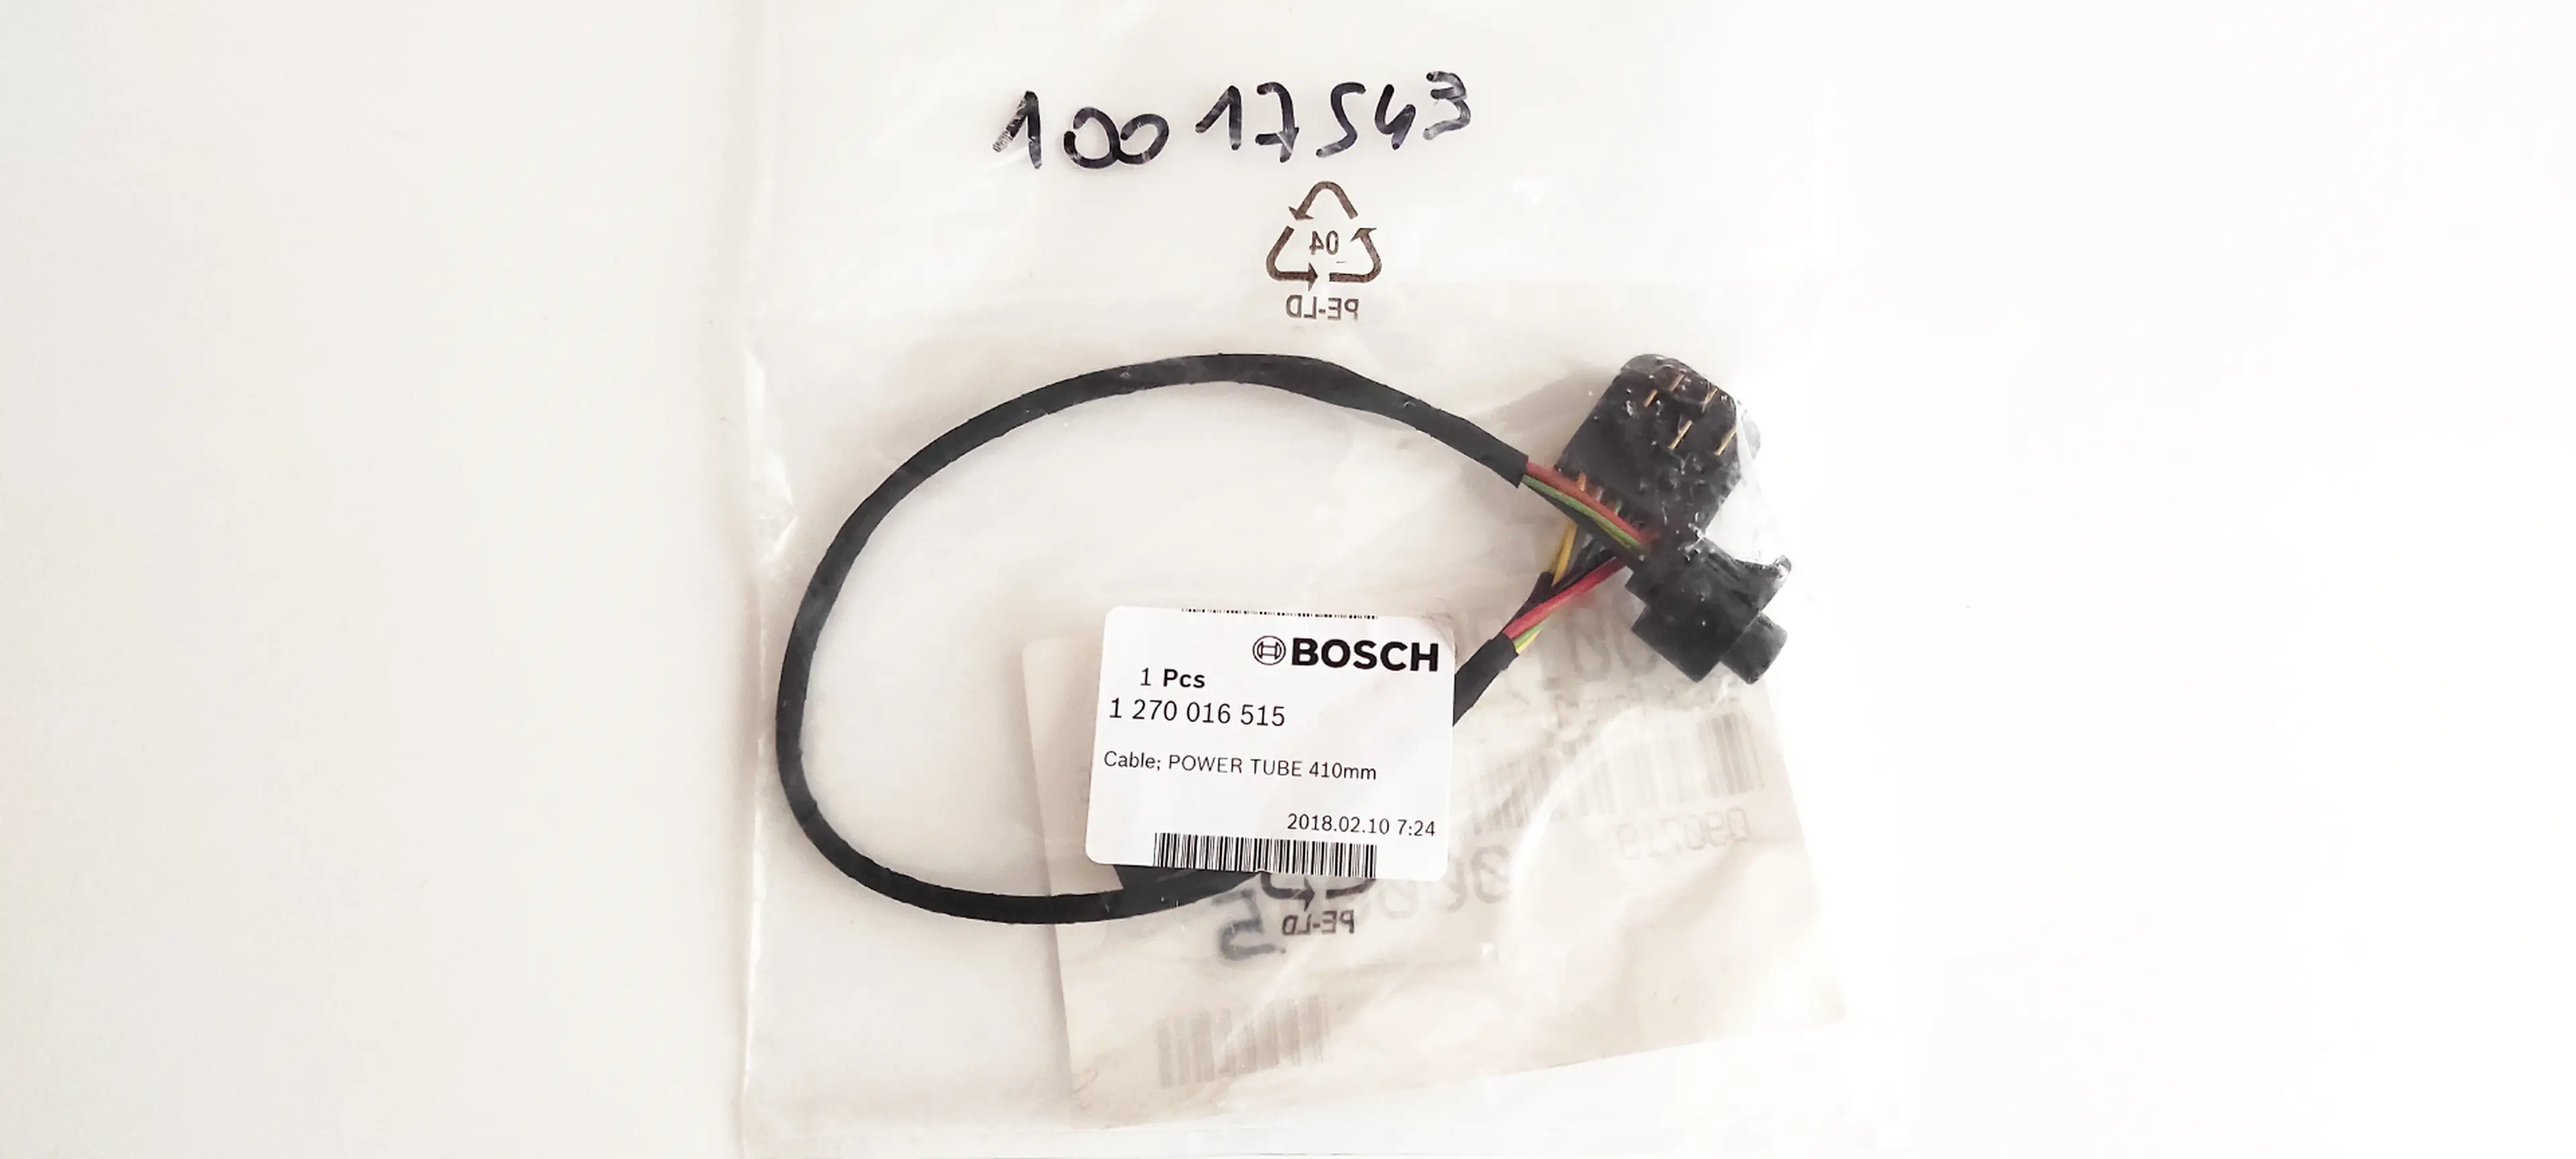 9. Cablu Bosch pentru baterie PowerTube 410mm nou